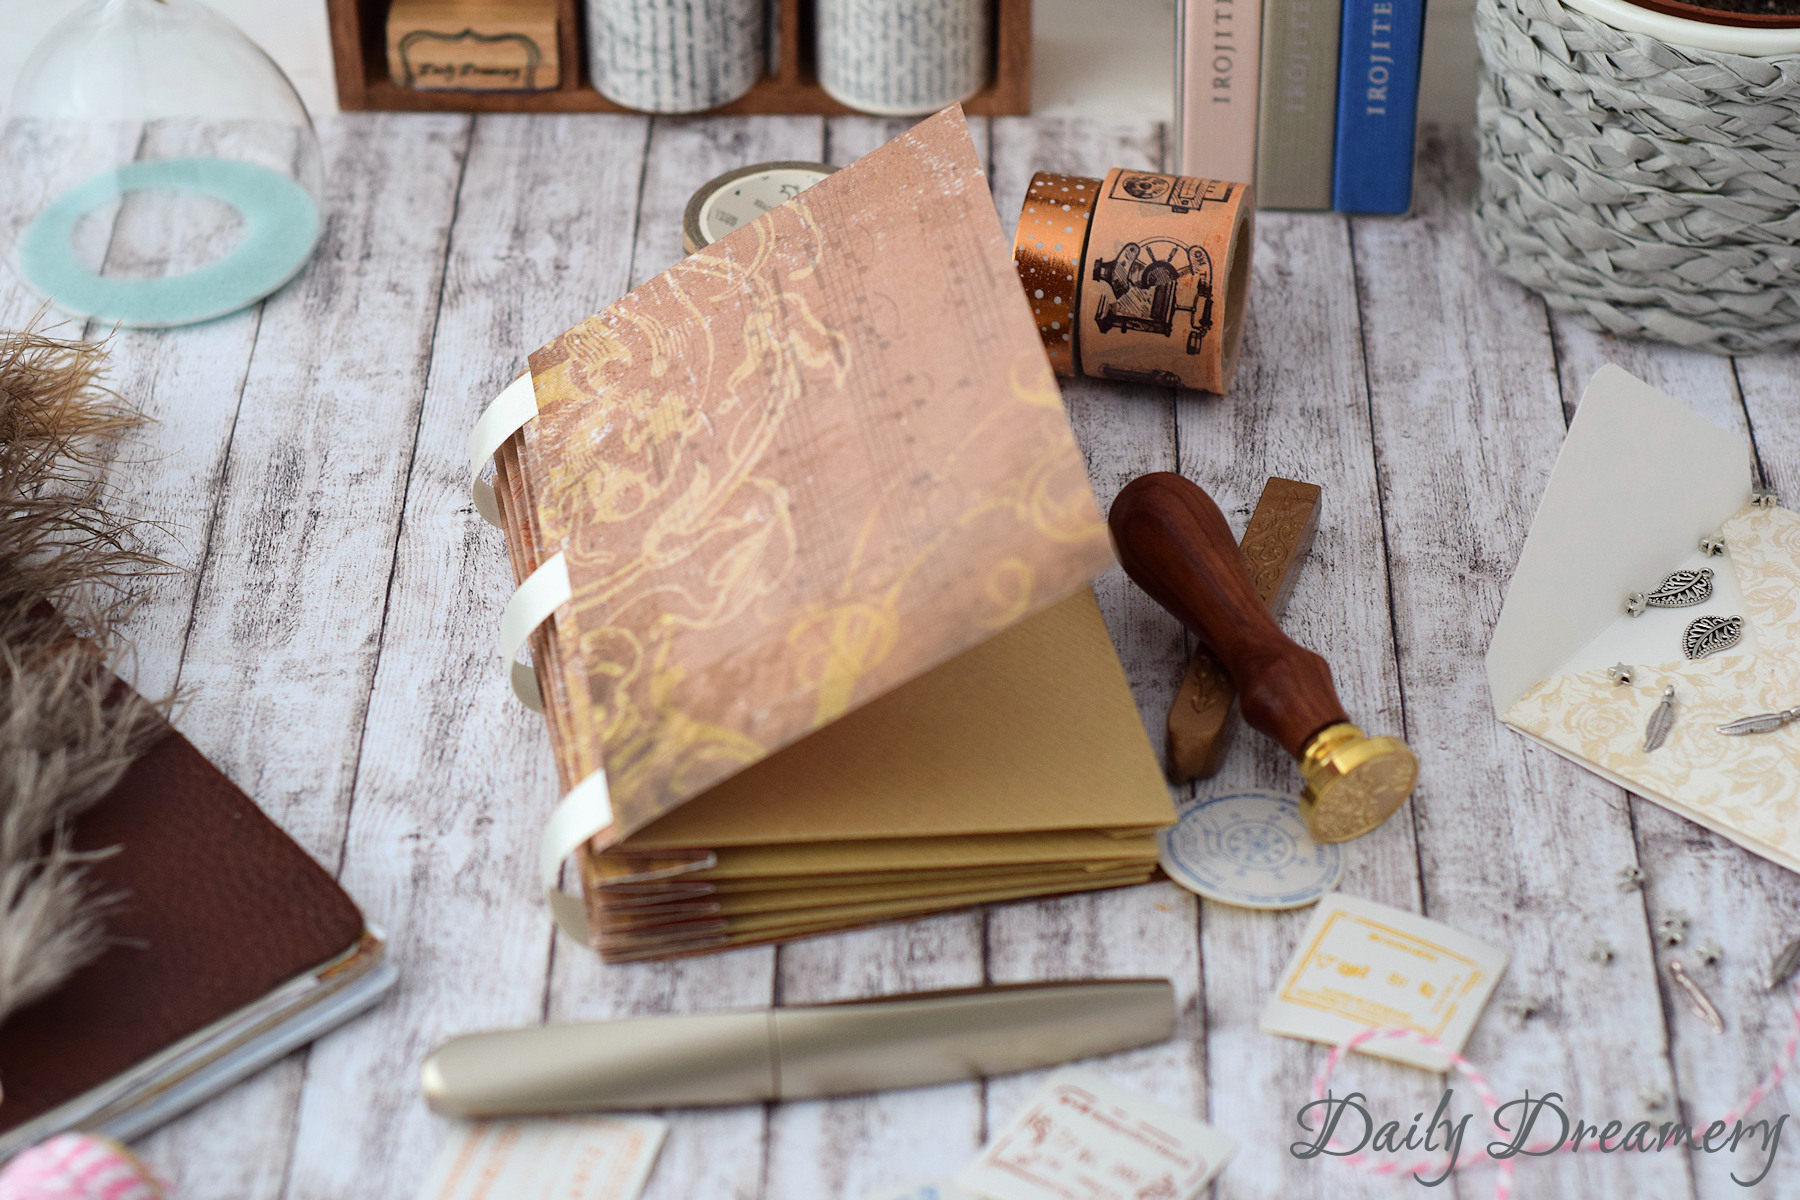 DIY Anleitung für eine Scrapbooking Idee: Ein Erinnerungsbuch aus Umschlägen. Ein kleines Sammelalbum für Souvenirs oder Bilder und eine tolle Geschenkidee.